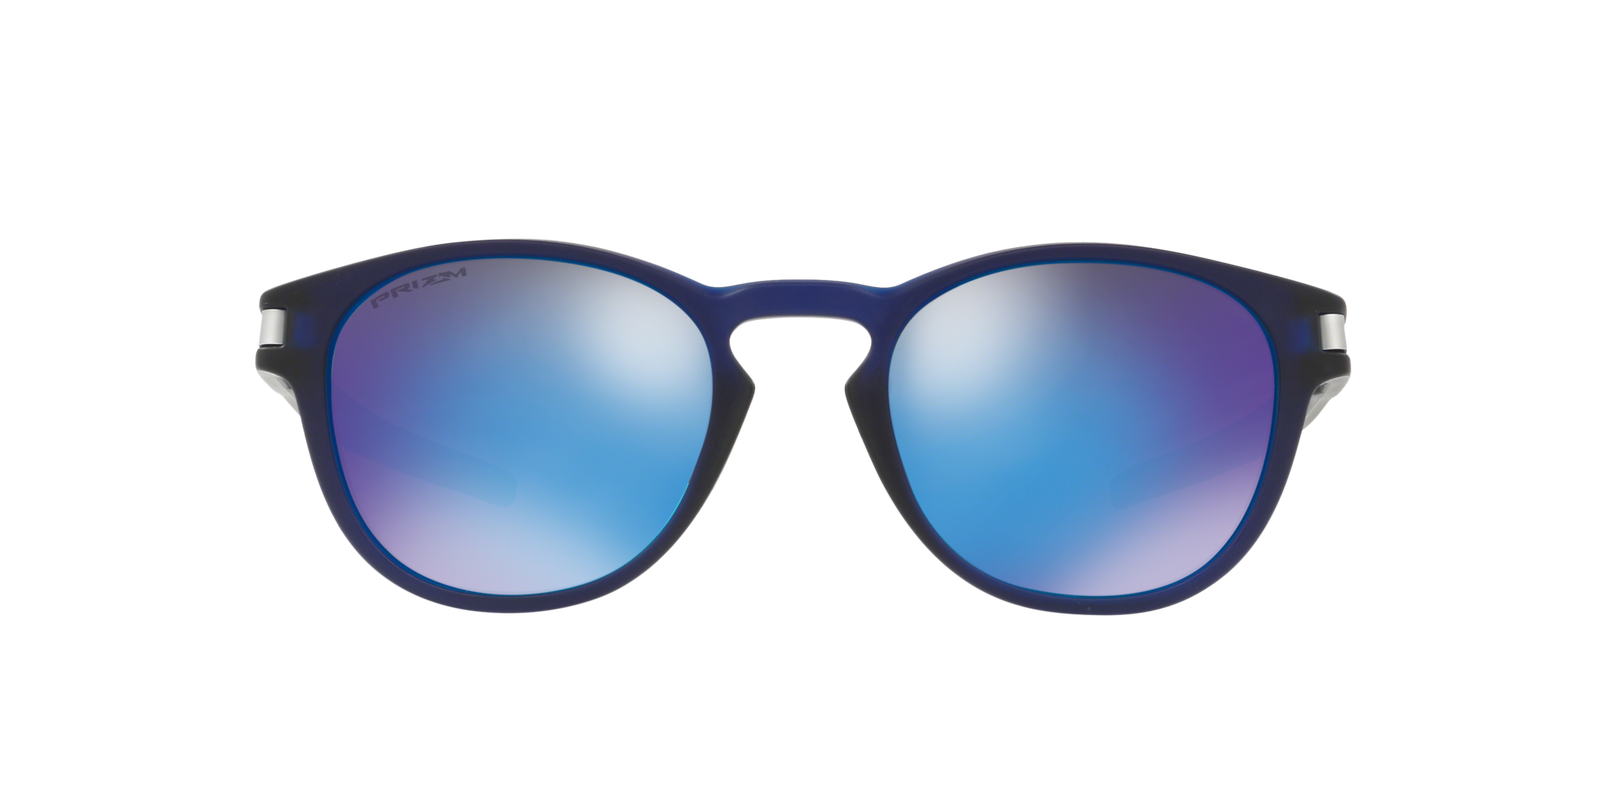 Tmavě modré sluneční brýle Oakley Latch